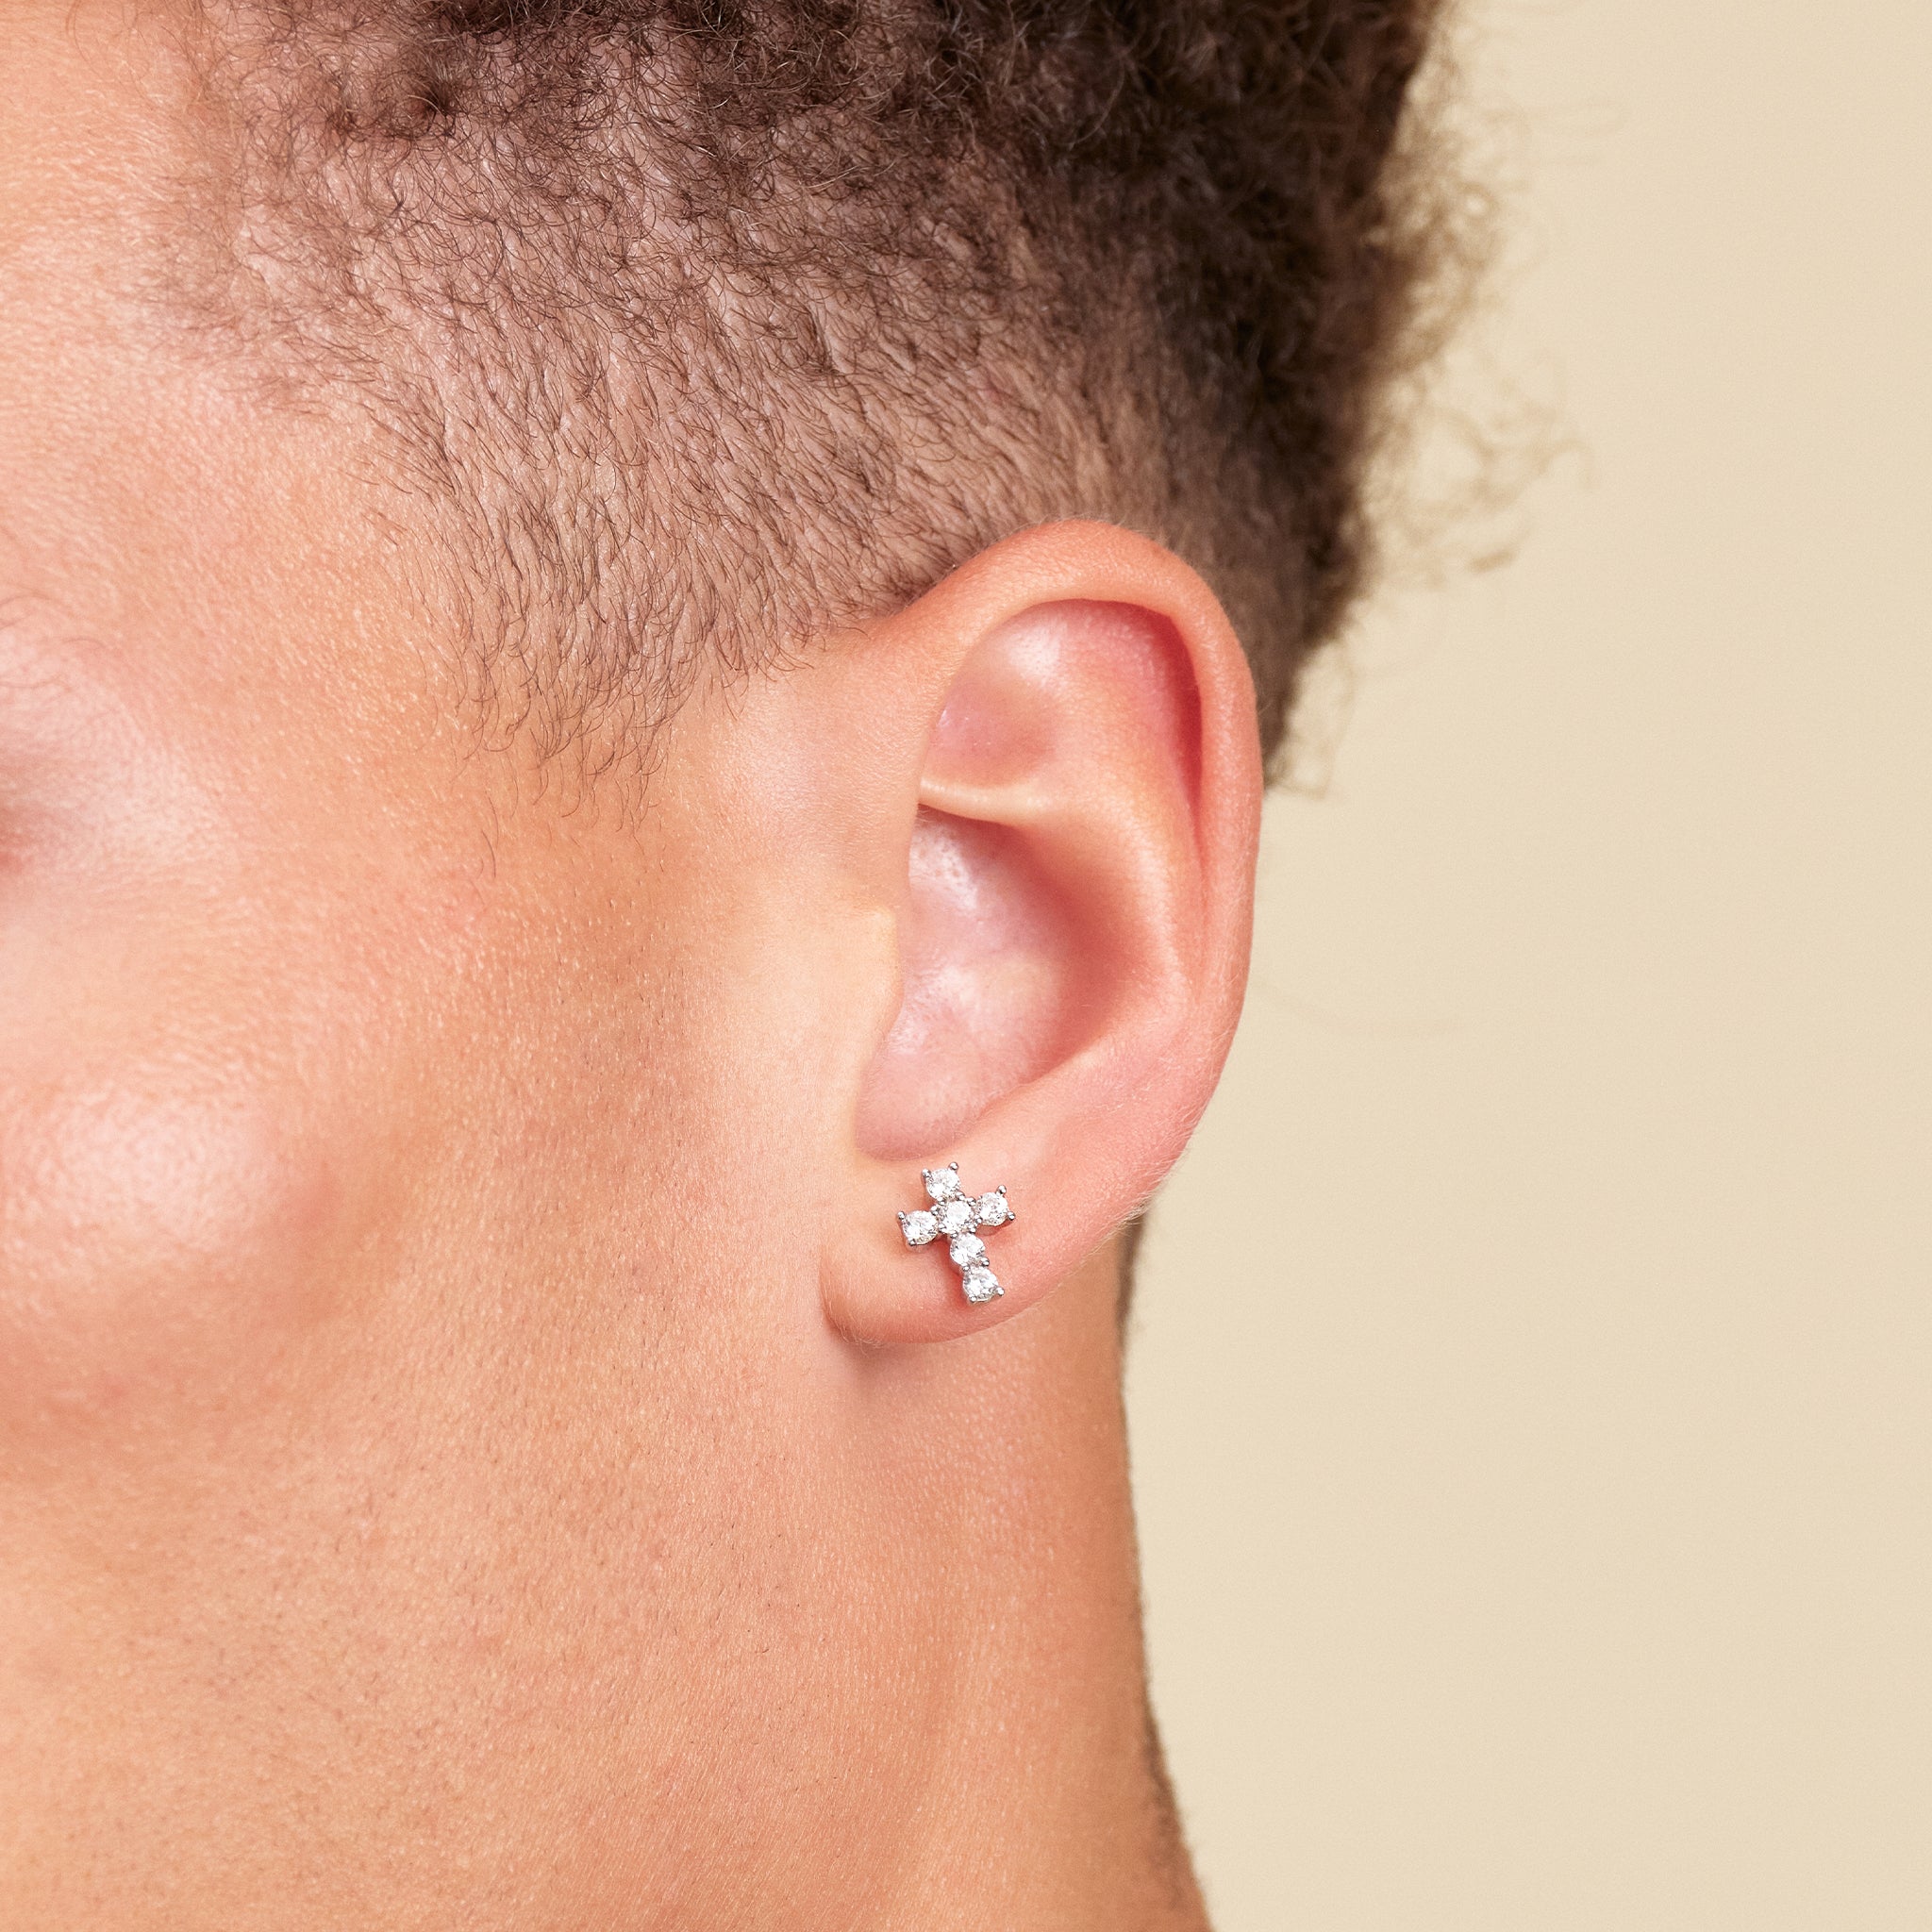 JAXXON Silver Bezeled Stud Earrings